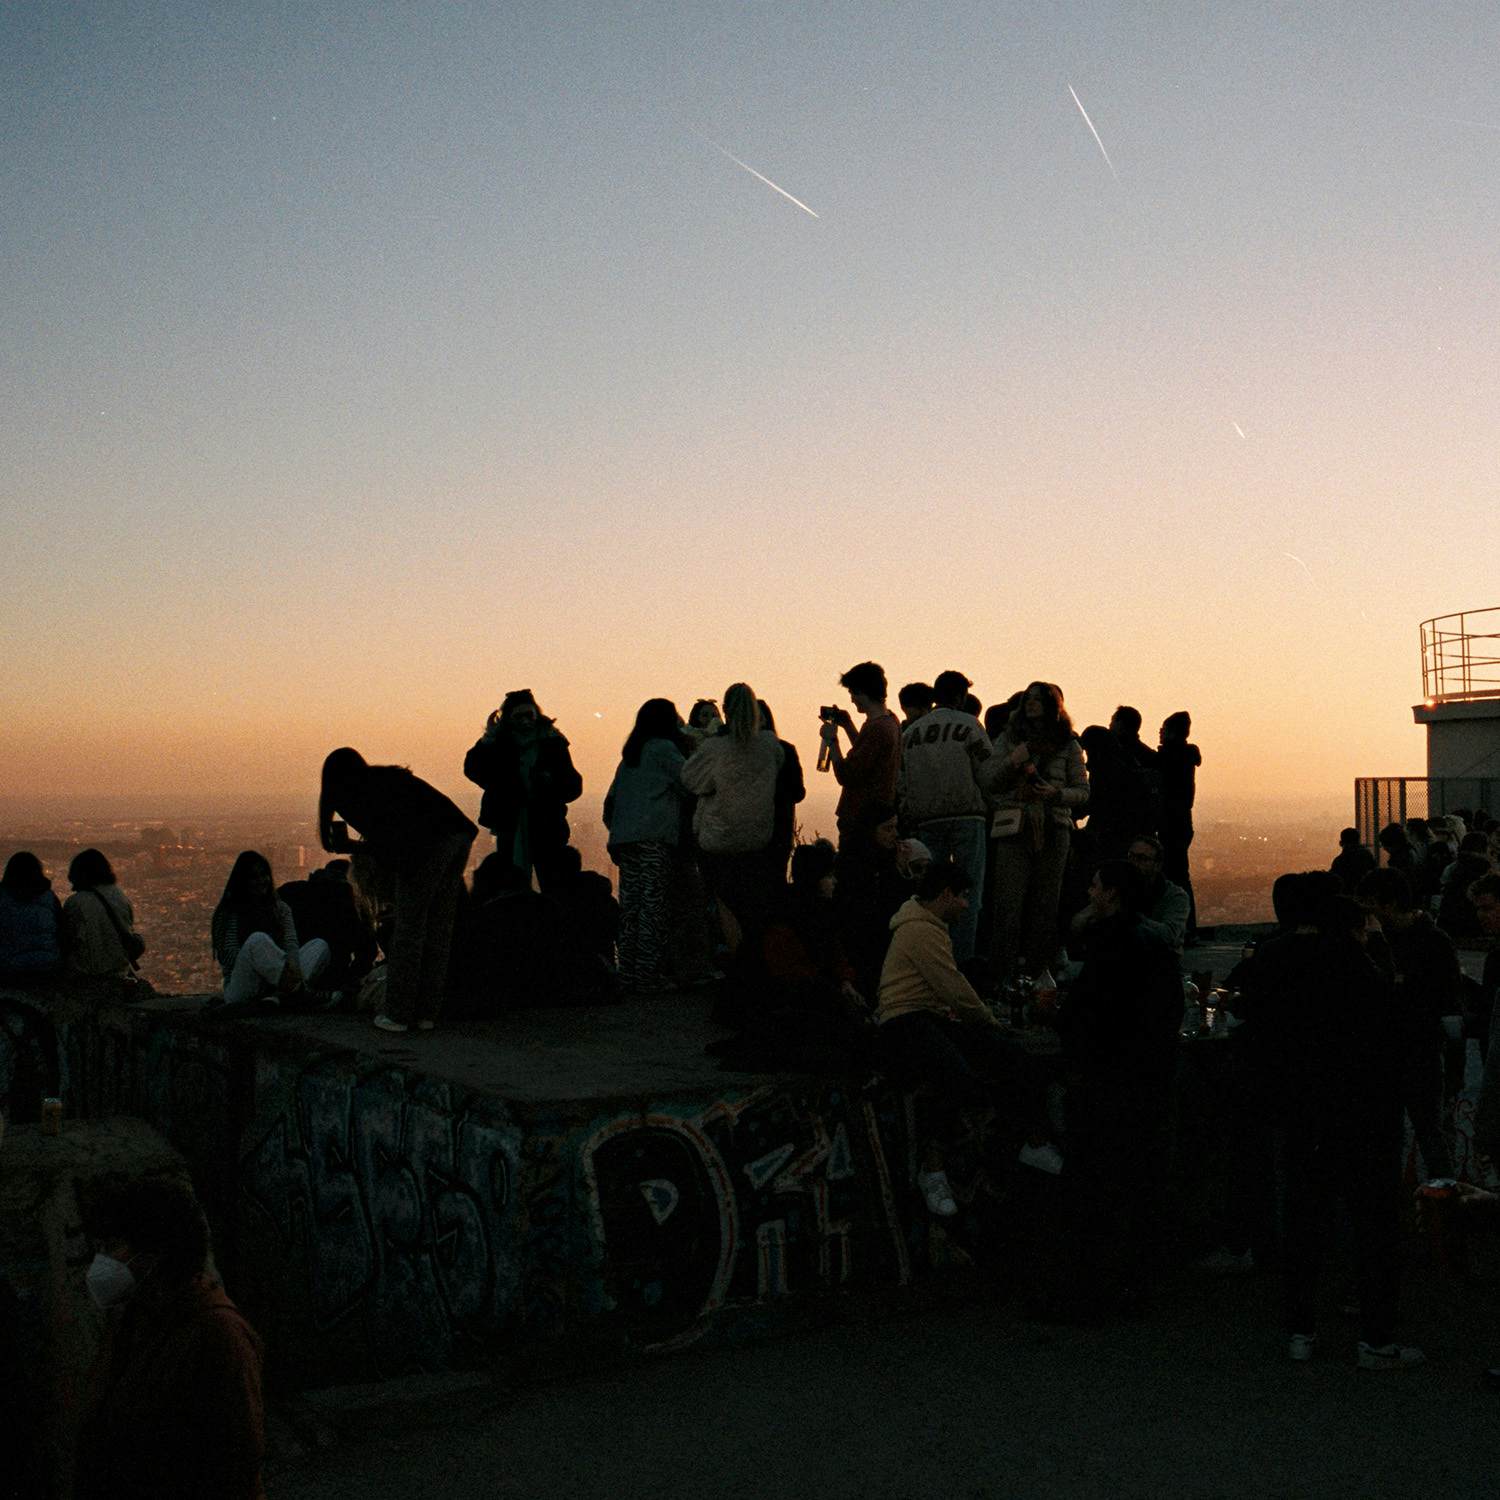 Studenter vid en utsiktsplats i solnedgången